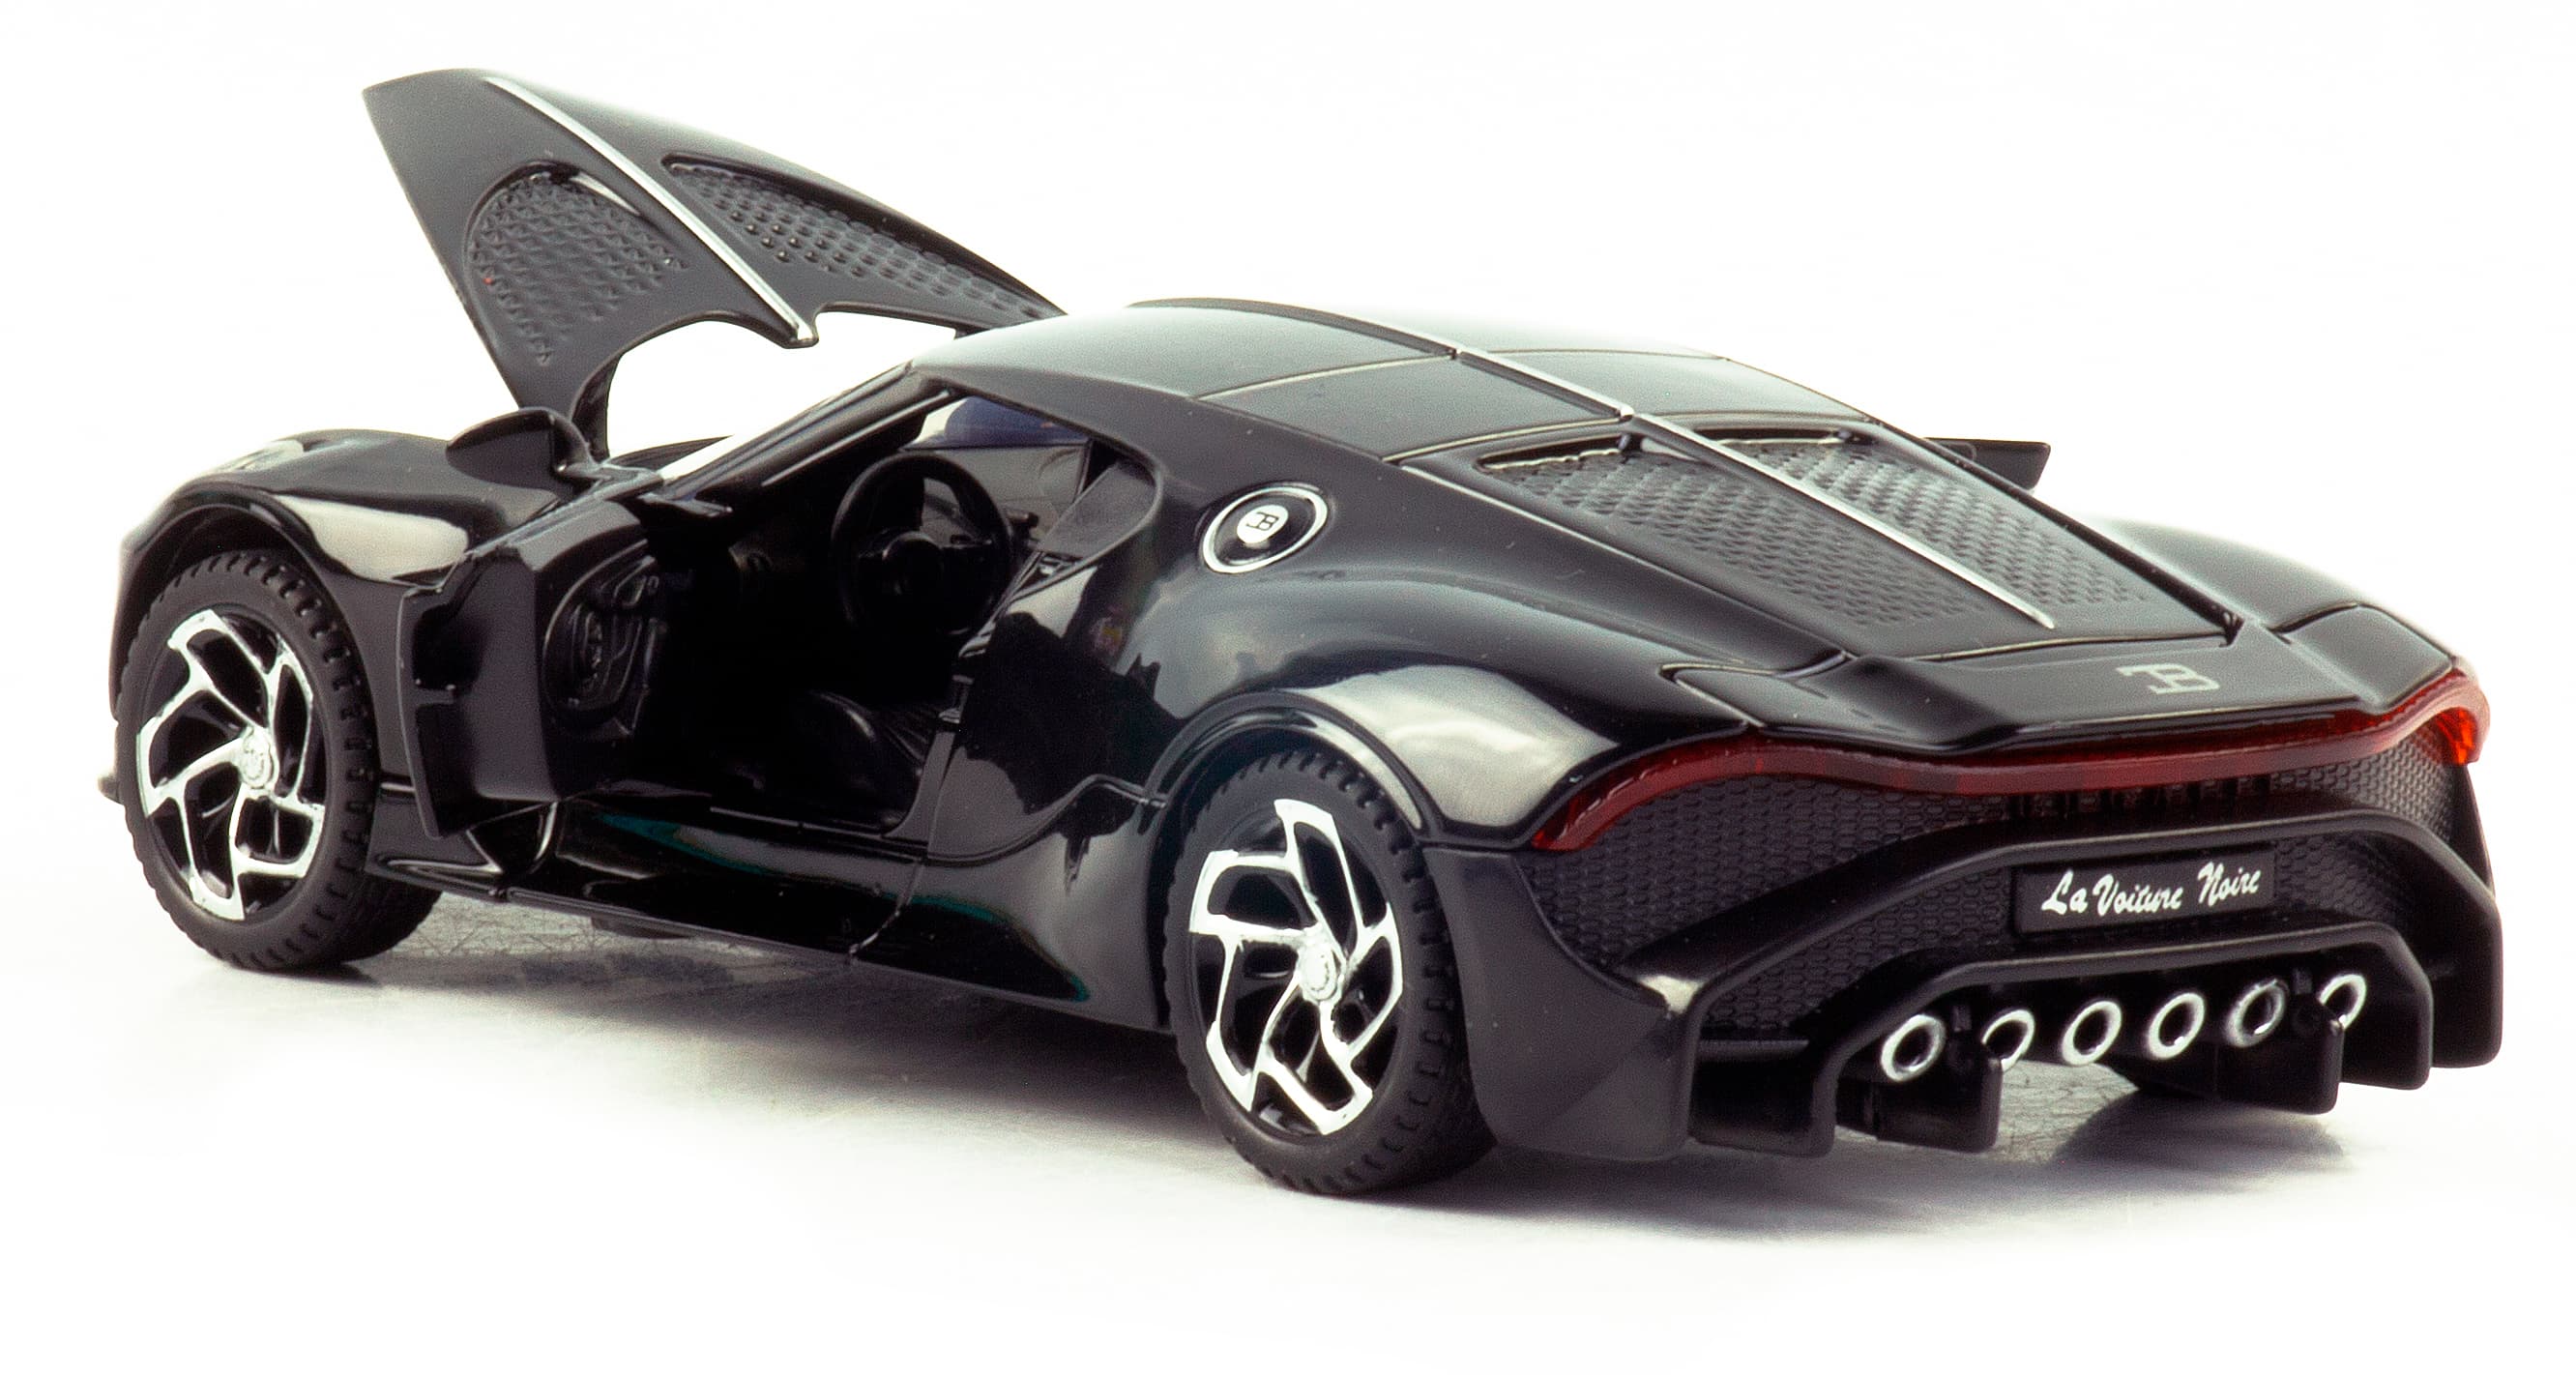 Металлическая машинка XHD 1:32 «Bugatti La Voiture Noire» 3201, 15,2 см. инерционная, свет, звук / Микс